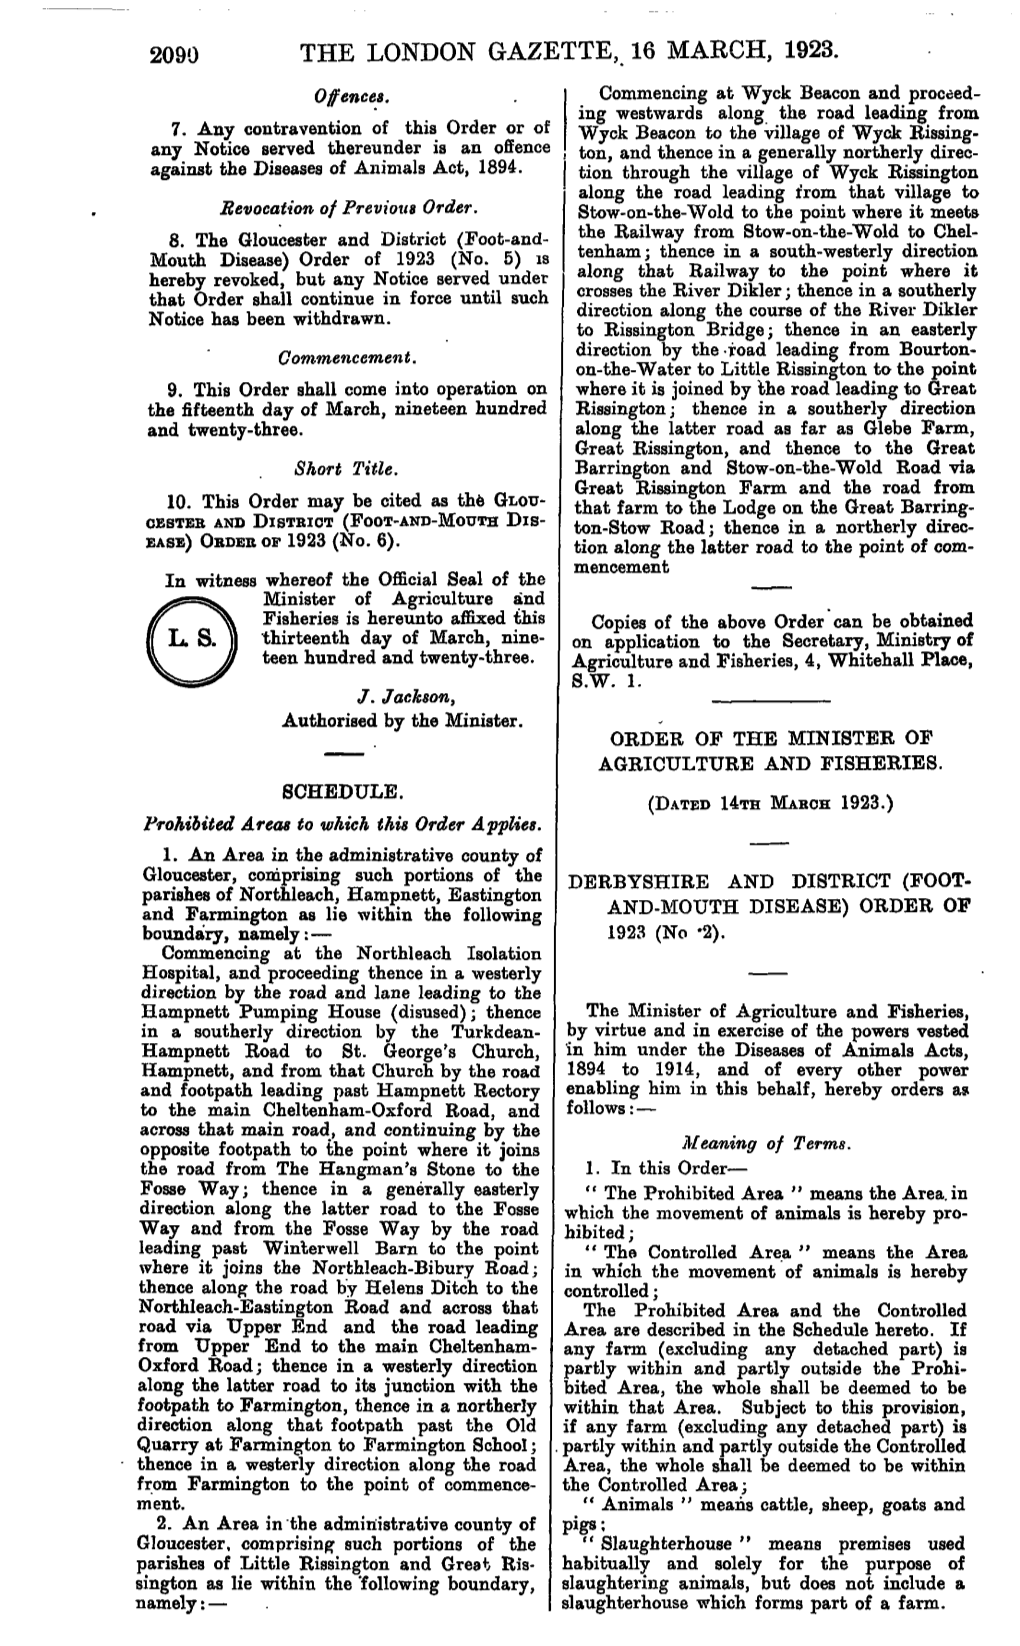 THE LONDON GAZETTE, 16 MARCH, 1923. Offences